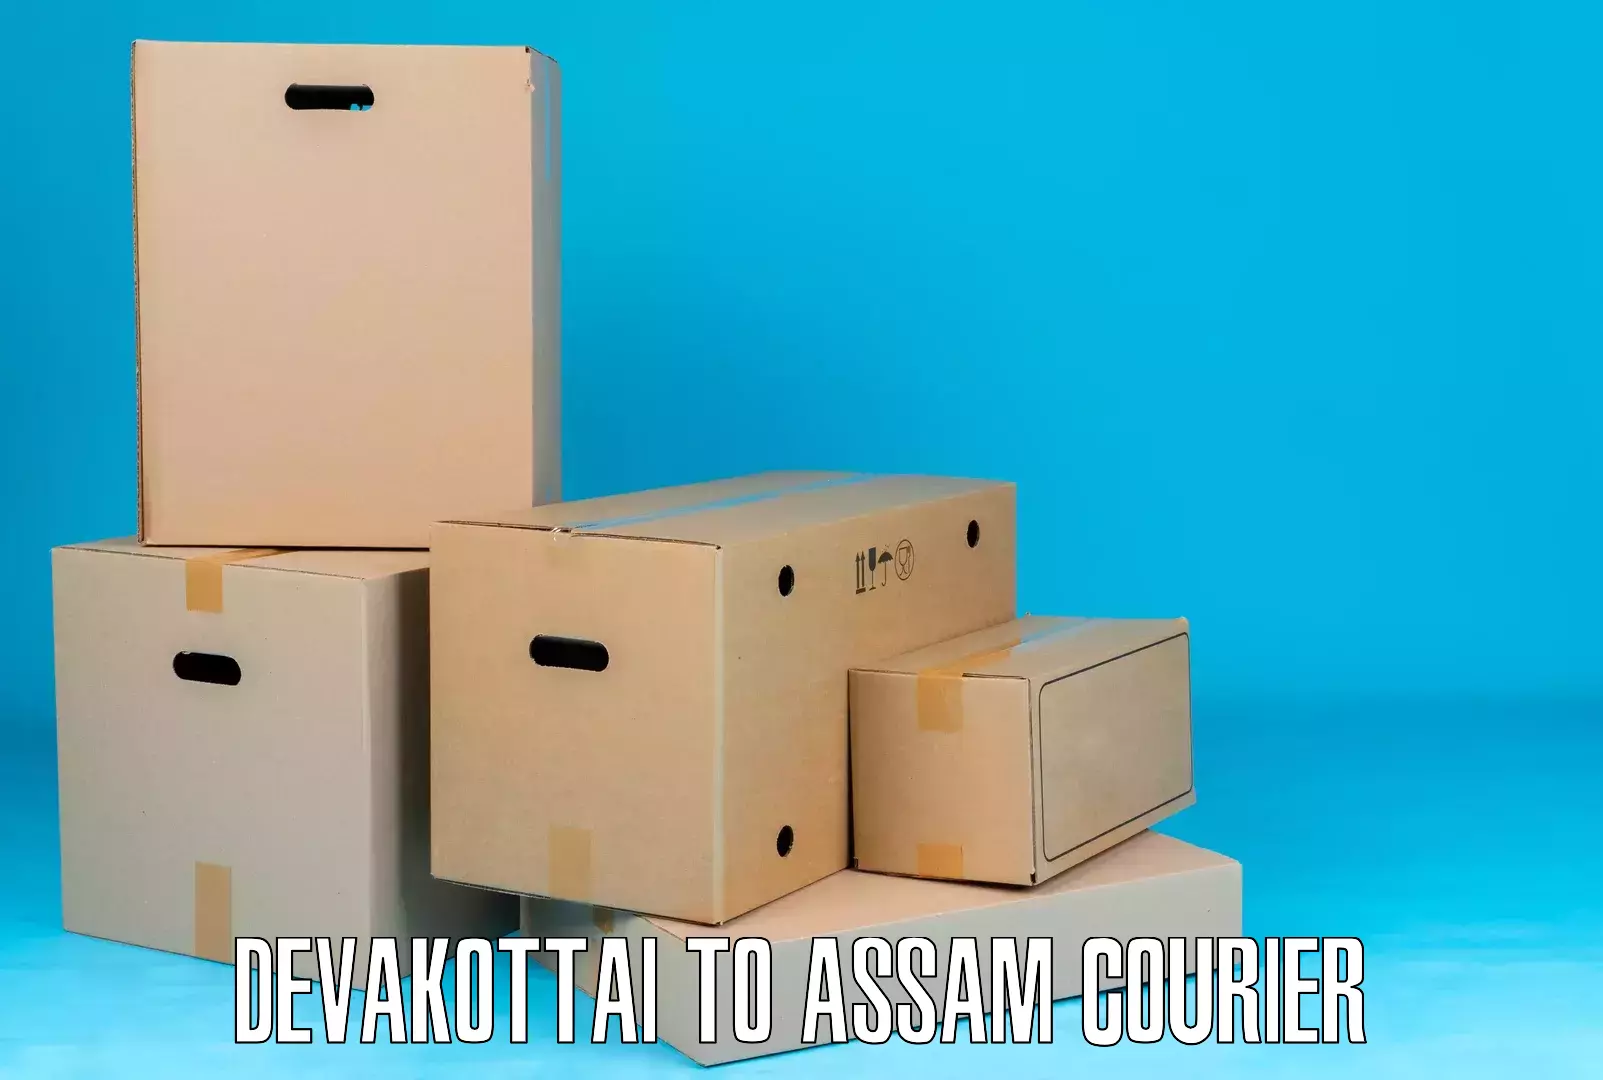 Customer-oriented courier services Devakottai to Tezpur